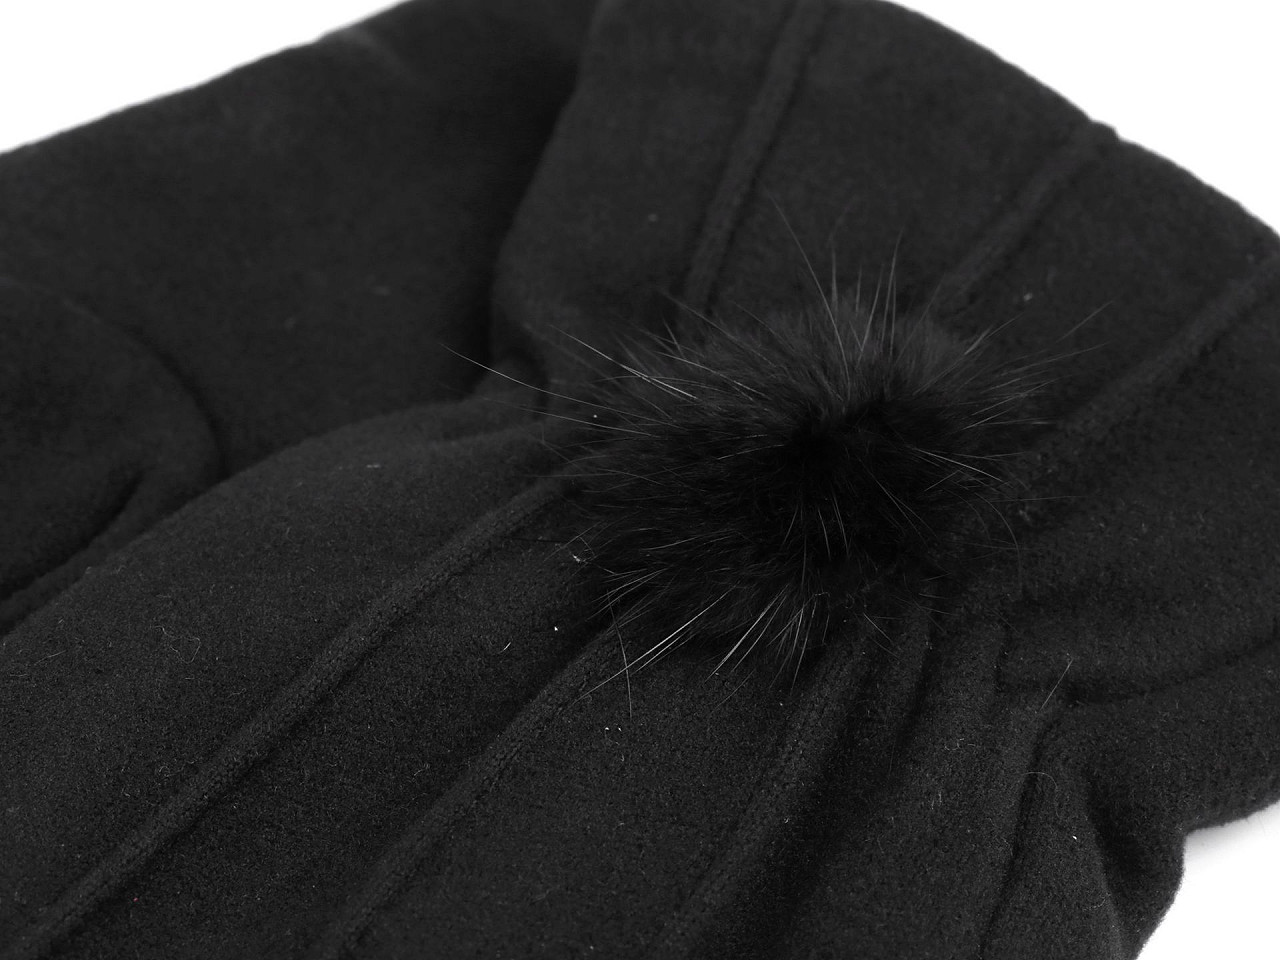 Mănuși de damă cu pompon din blană, cu funcție tactilă, negre, 1 pereche